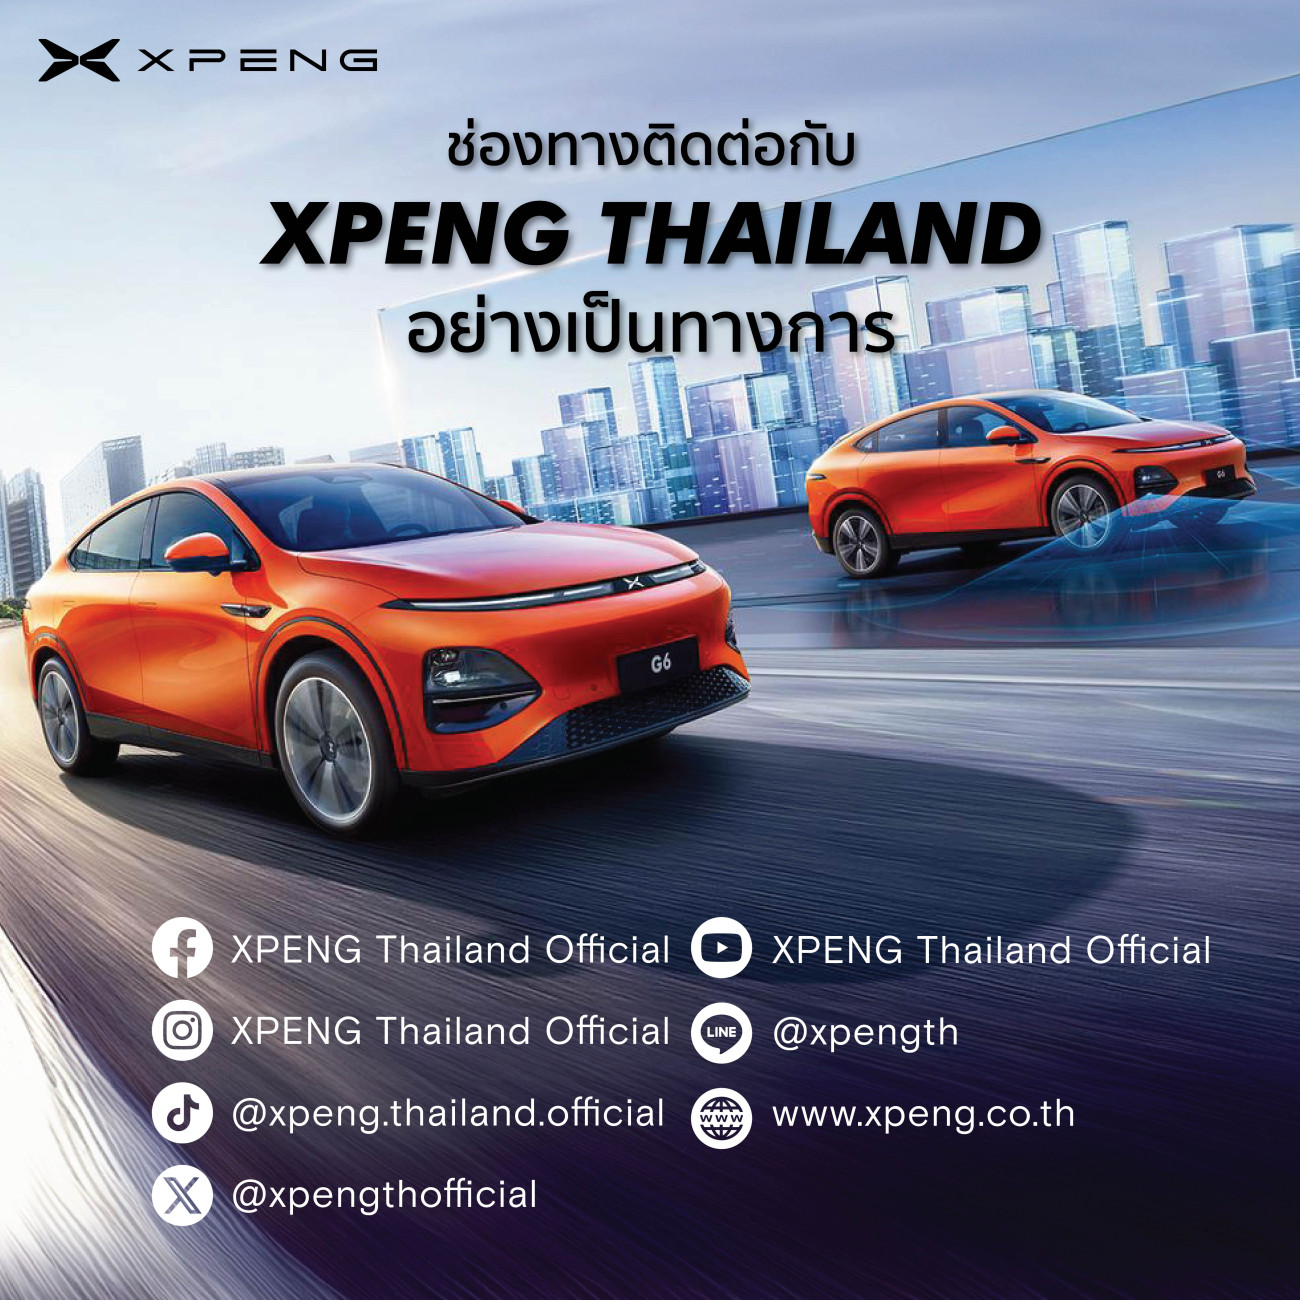 ‘XPENG Thailand Official’ คอมมิวนิตี้อย่างเป็นทางการ เพื่อแฟนยานยนต์ไฟฟ้าอัจฉริยะ